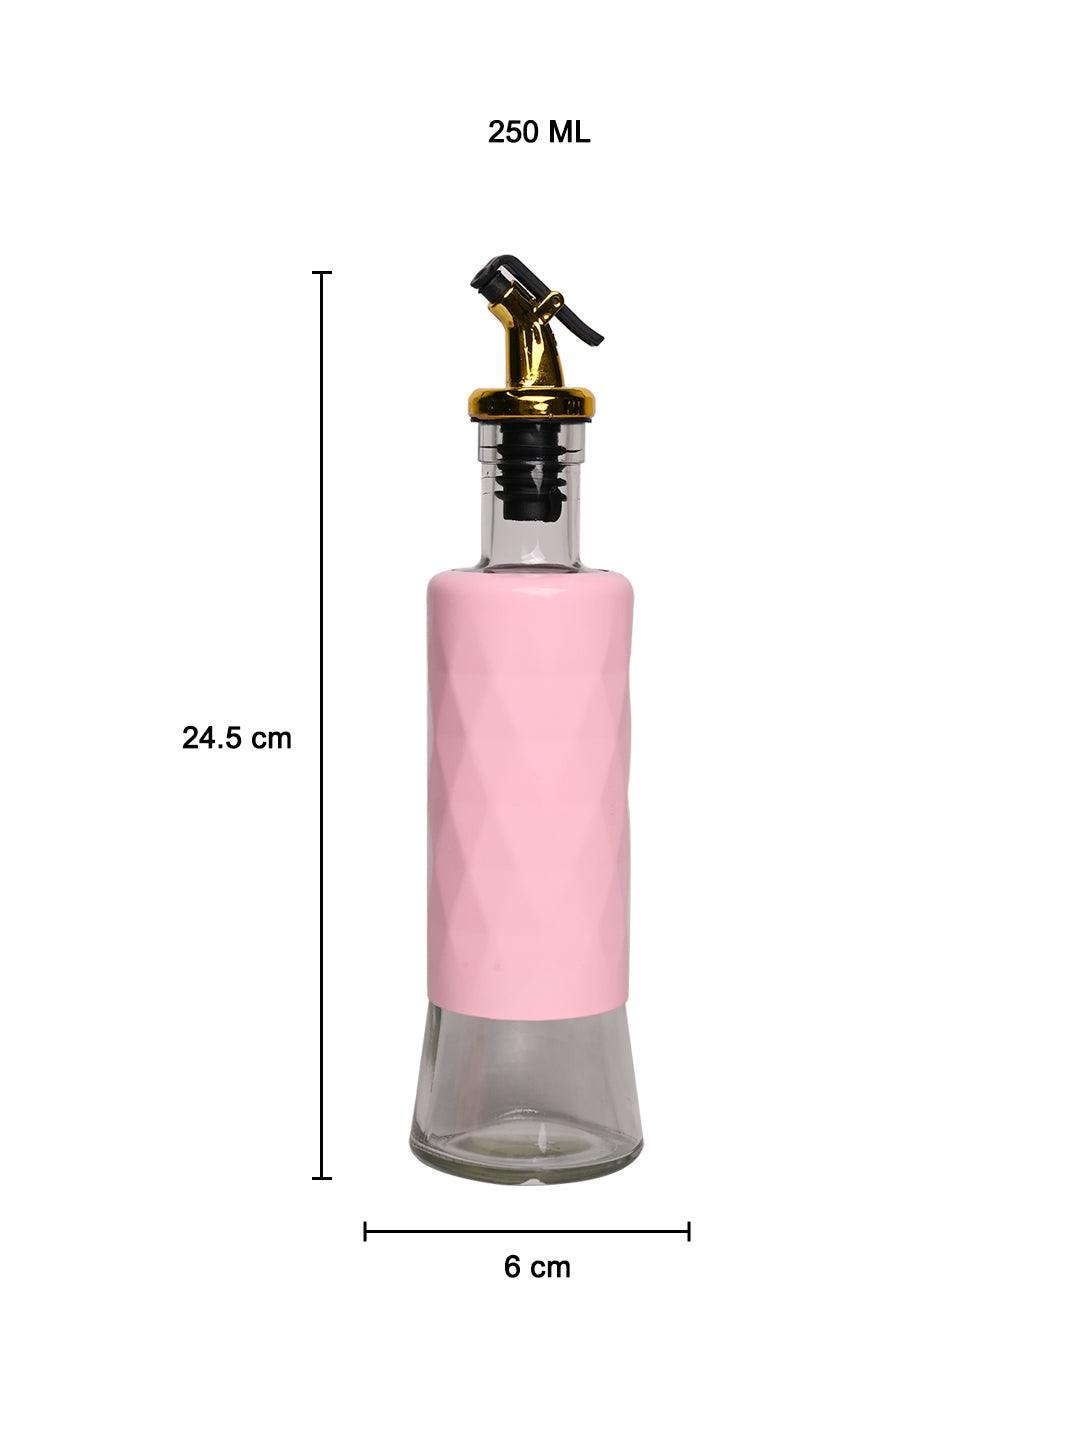 Oil Dispenser - 250Ml, Pink - MARKET 99